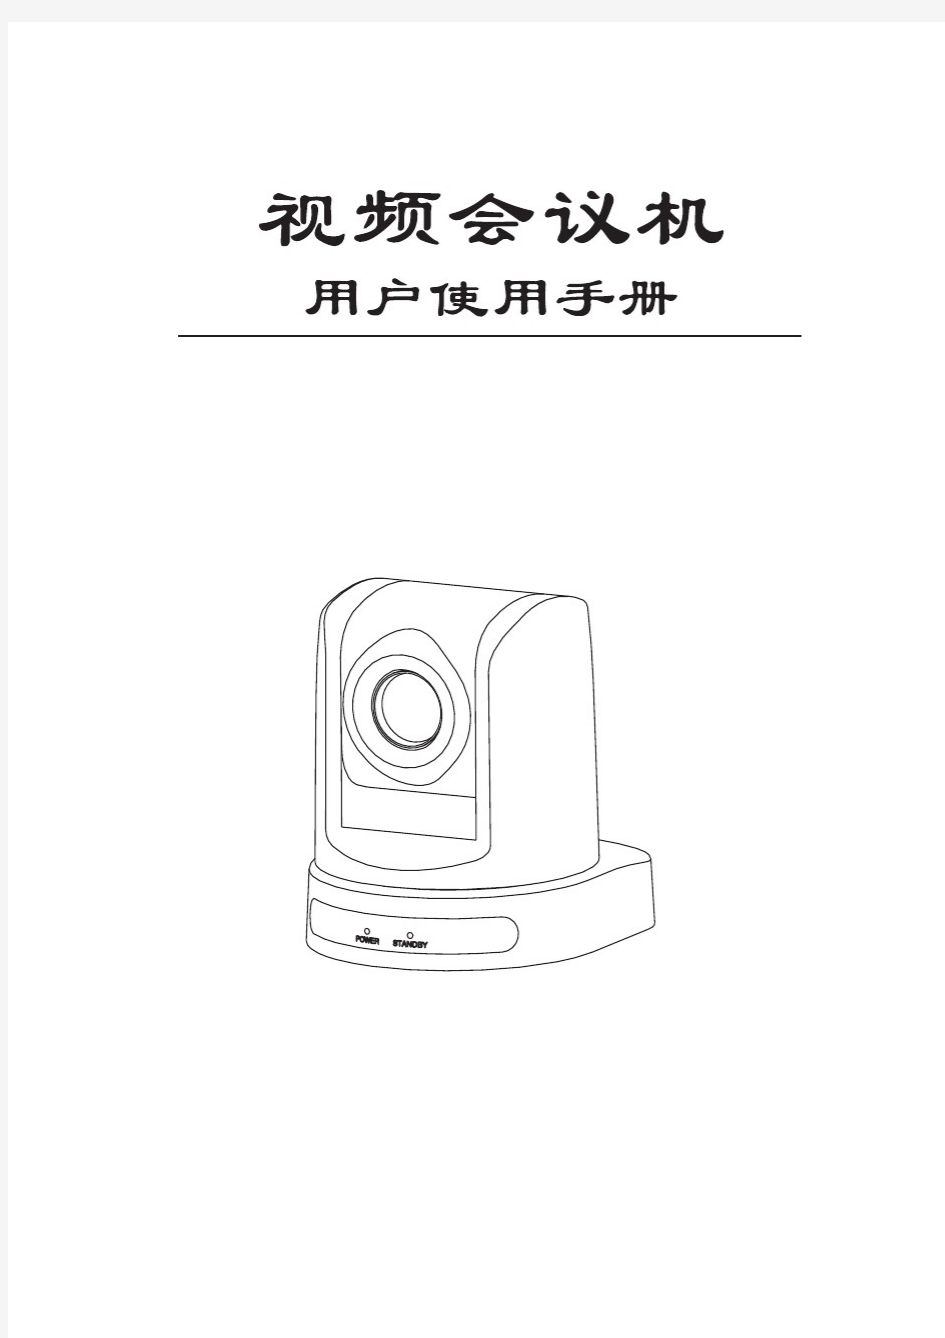 美赞美视频会议摄像机(D70)中文说明书(20110112)